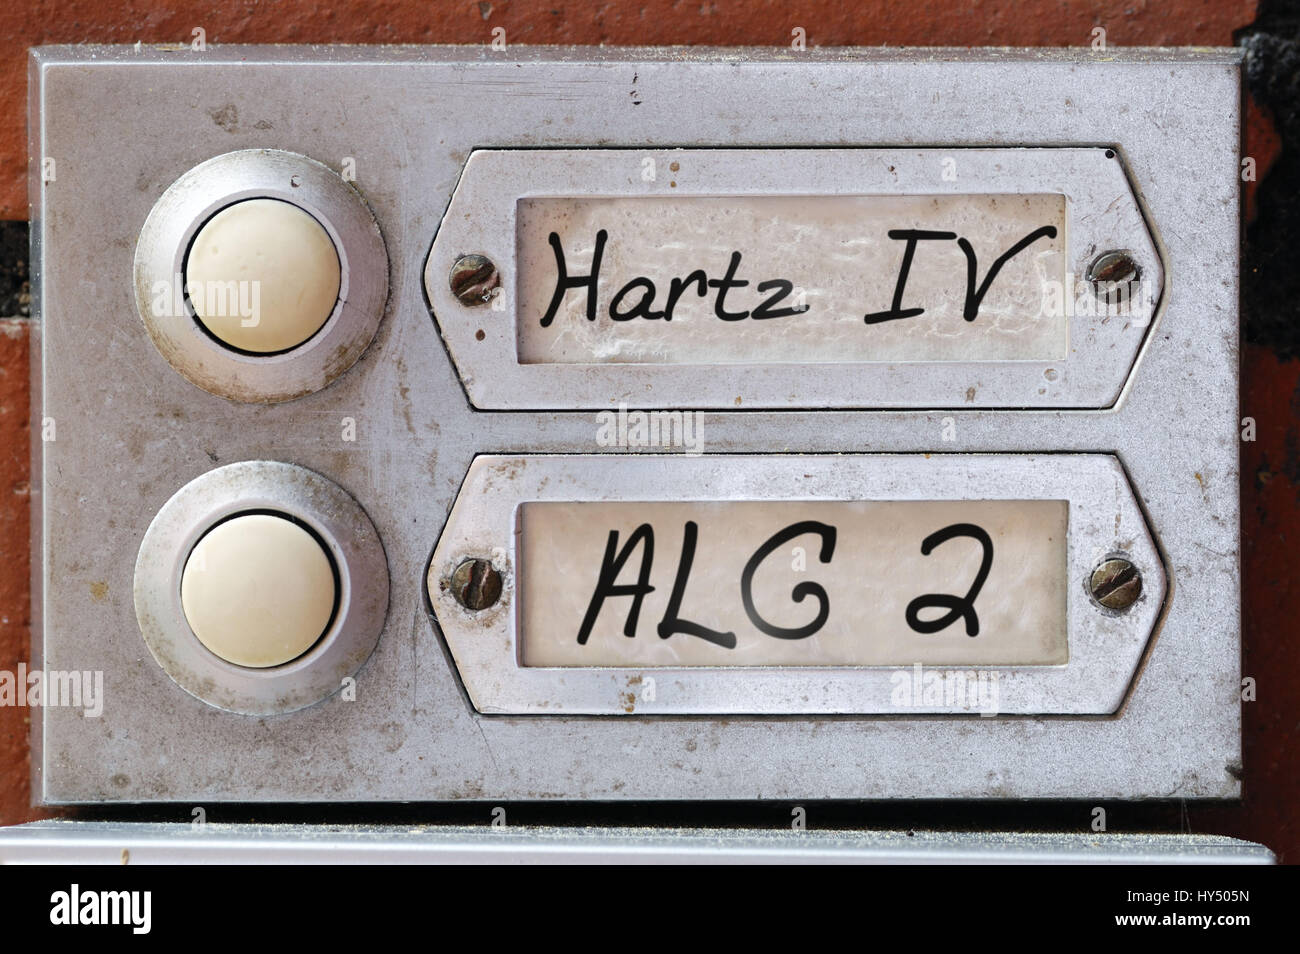 Bell sign with the label Hartz IV and ALG 2, Klingelschild mit der Aufschrift Hartz IV und ALG 2 Stock Photo